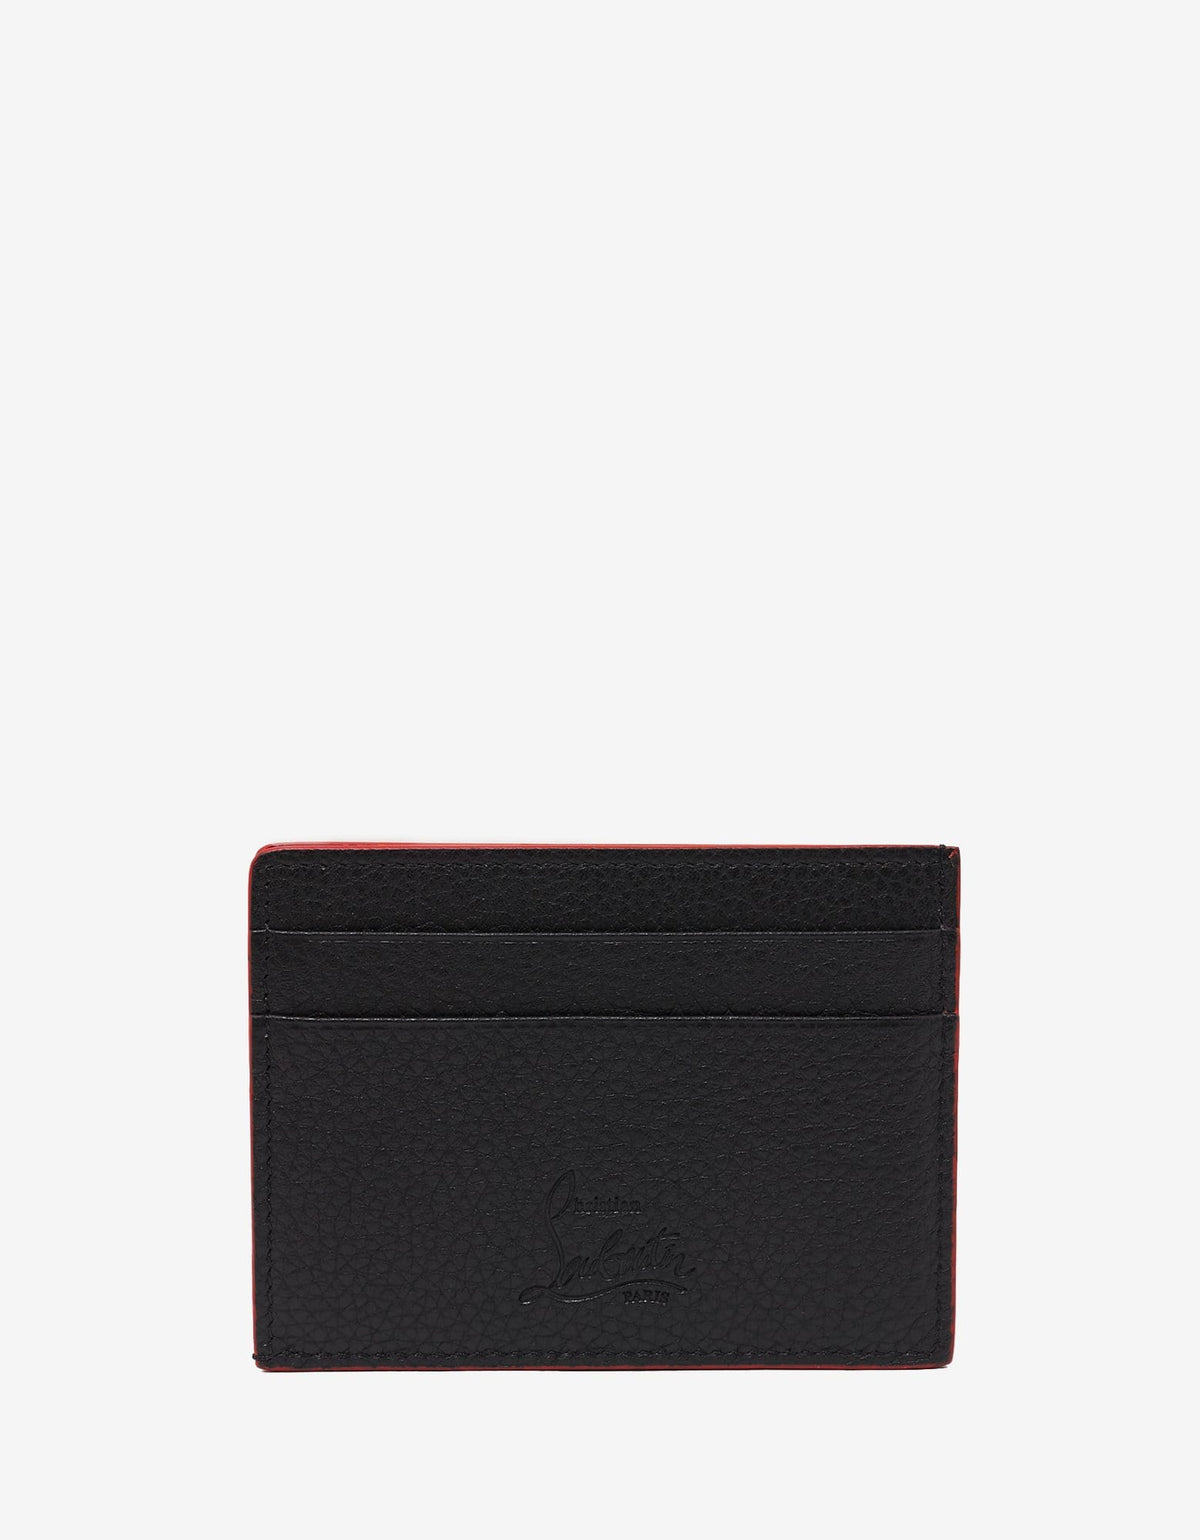 Christian Louboutin Kios Black Grain Leather Spikes Card Holder